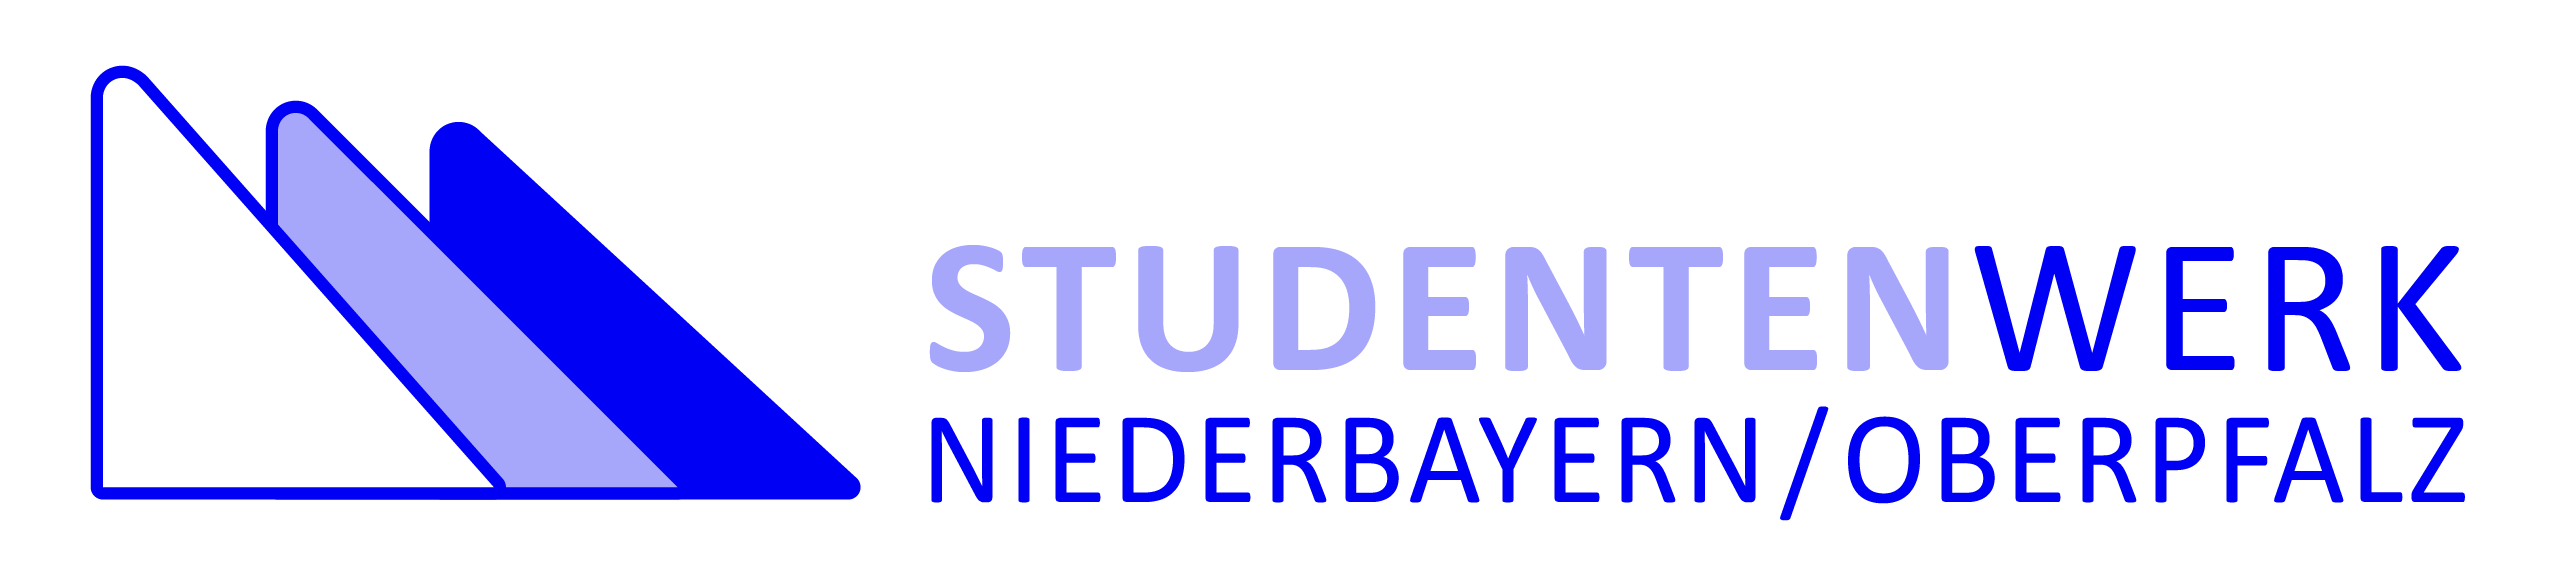 Studentenwerk Niederbayern/Oberpfalz